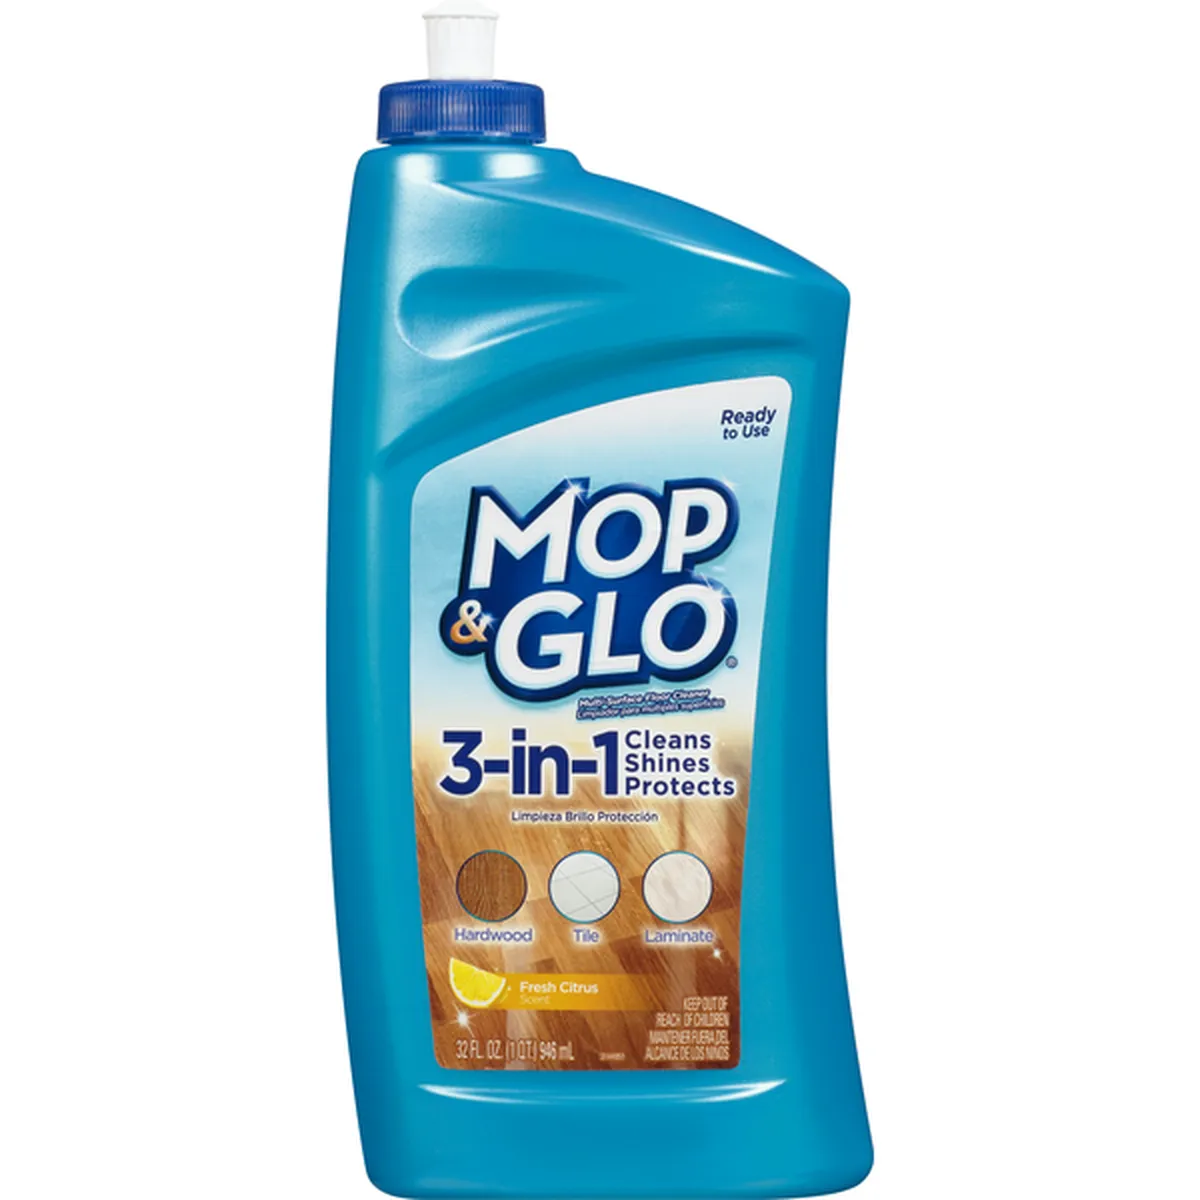 Mop & Glo